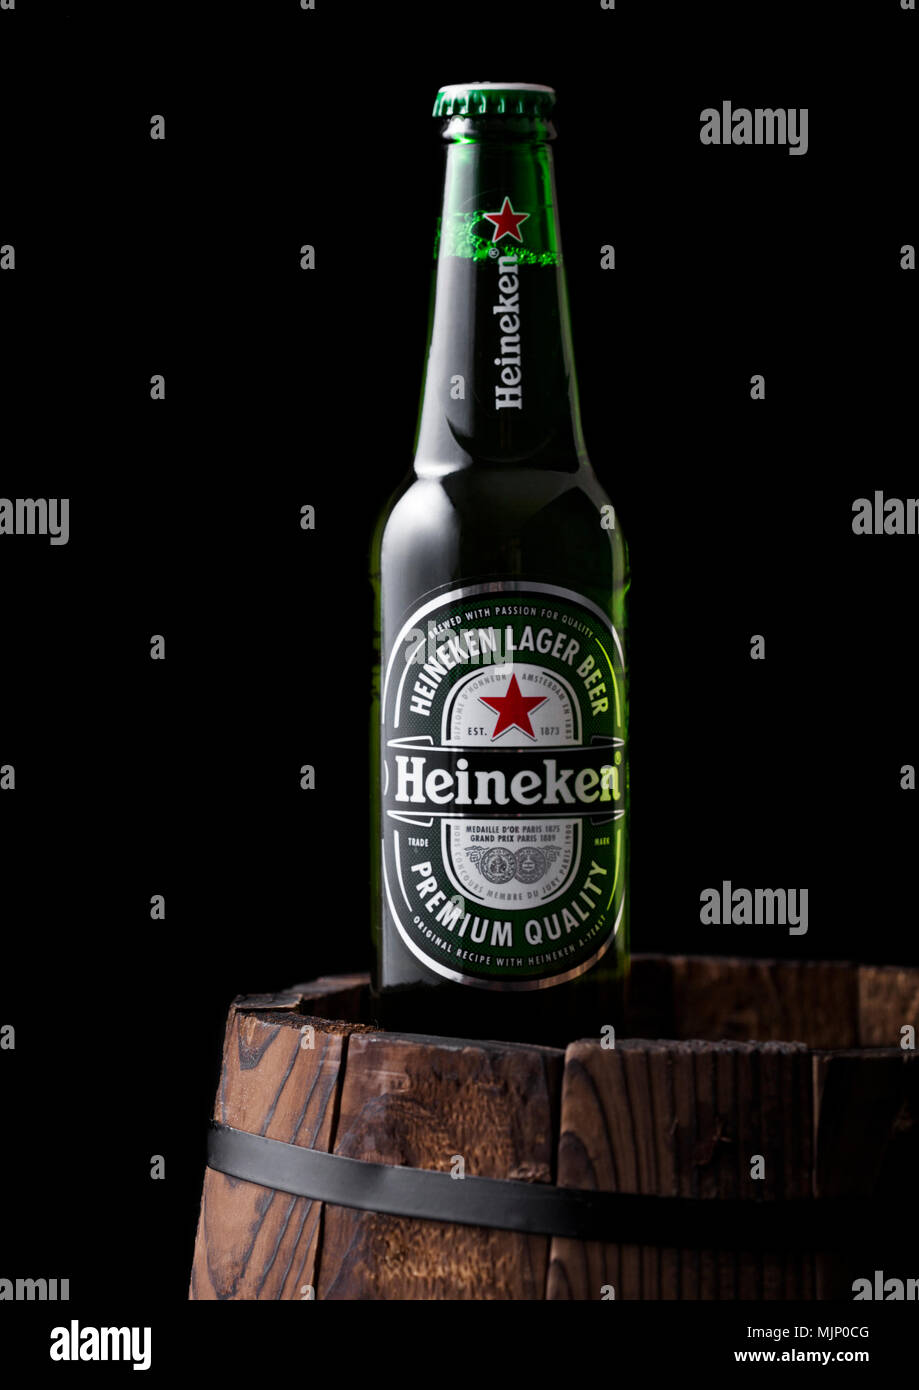 LONDON, Regno Unito - 03 Maggio 2018: Bottiglia di Heineken Birra chiara  sulla parte superiore del barile di legno e sfondo nero. Heineken è il  prodotto di punta di Heineken in Foto stock - Alamy